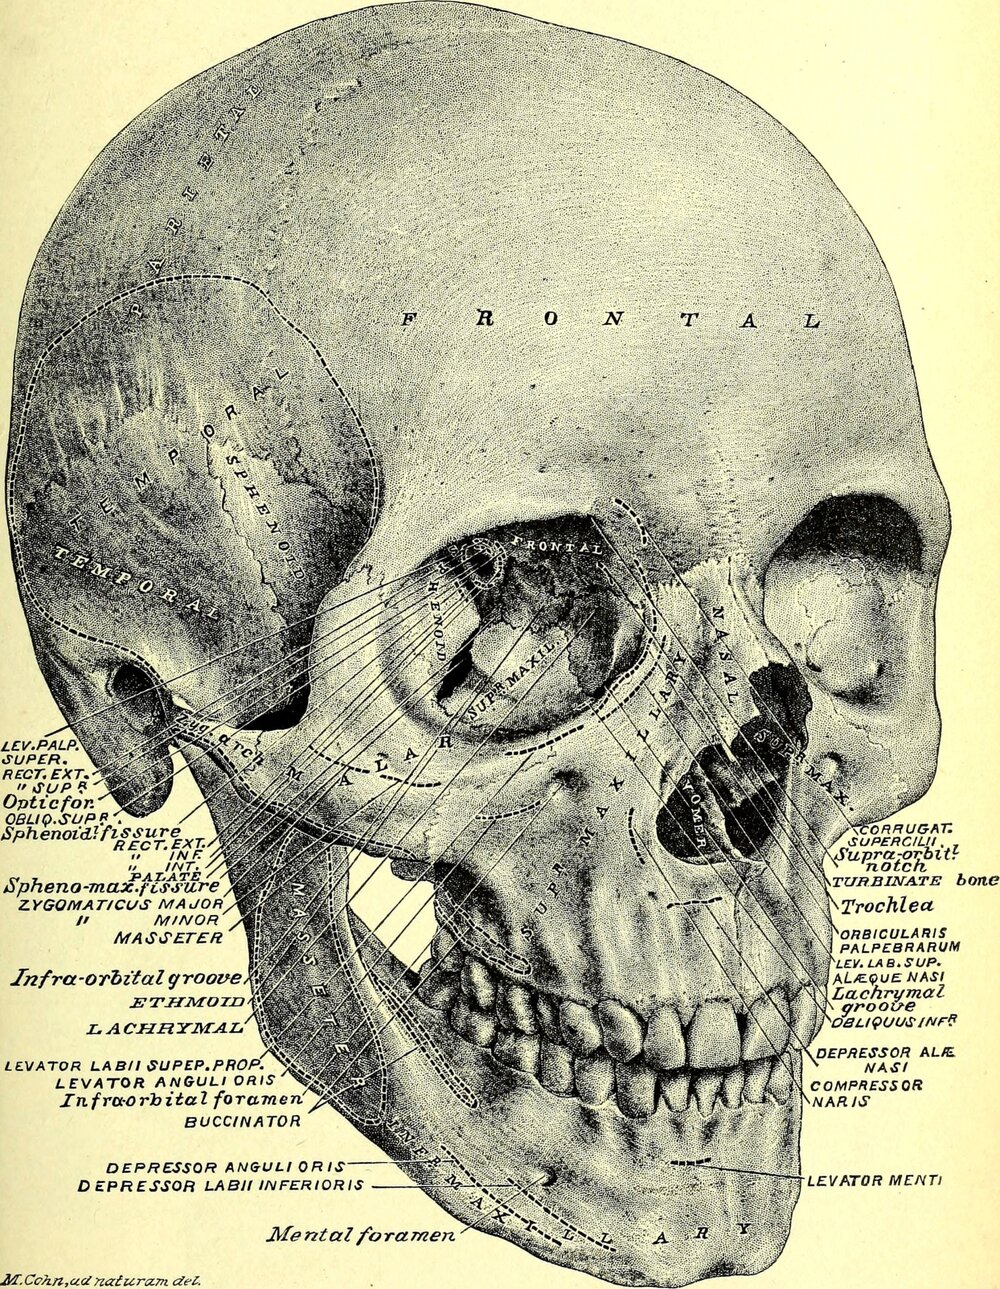 schadel-mensch-anatomie-vintage-1628202823UqY.jpg